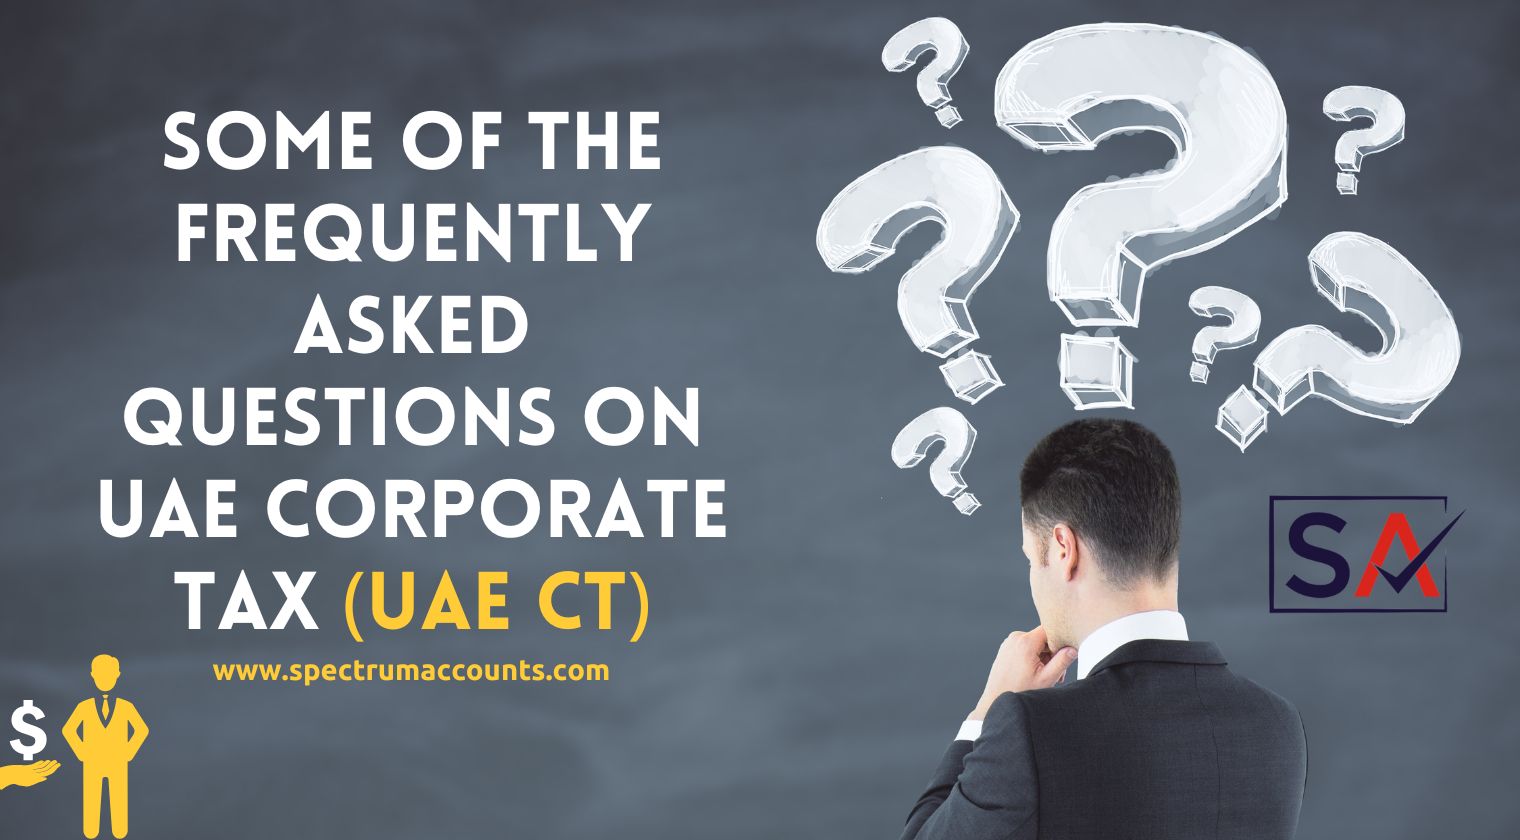 FAQ's on Corporate Tax